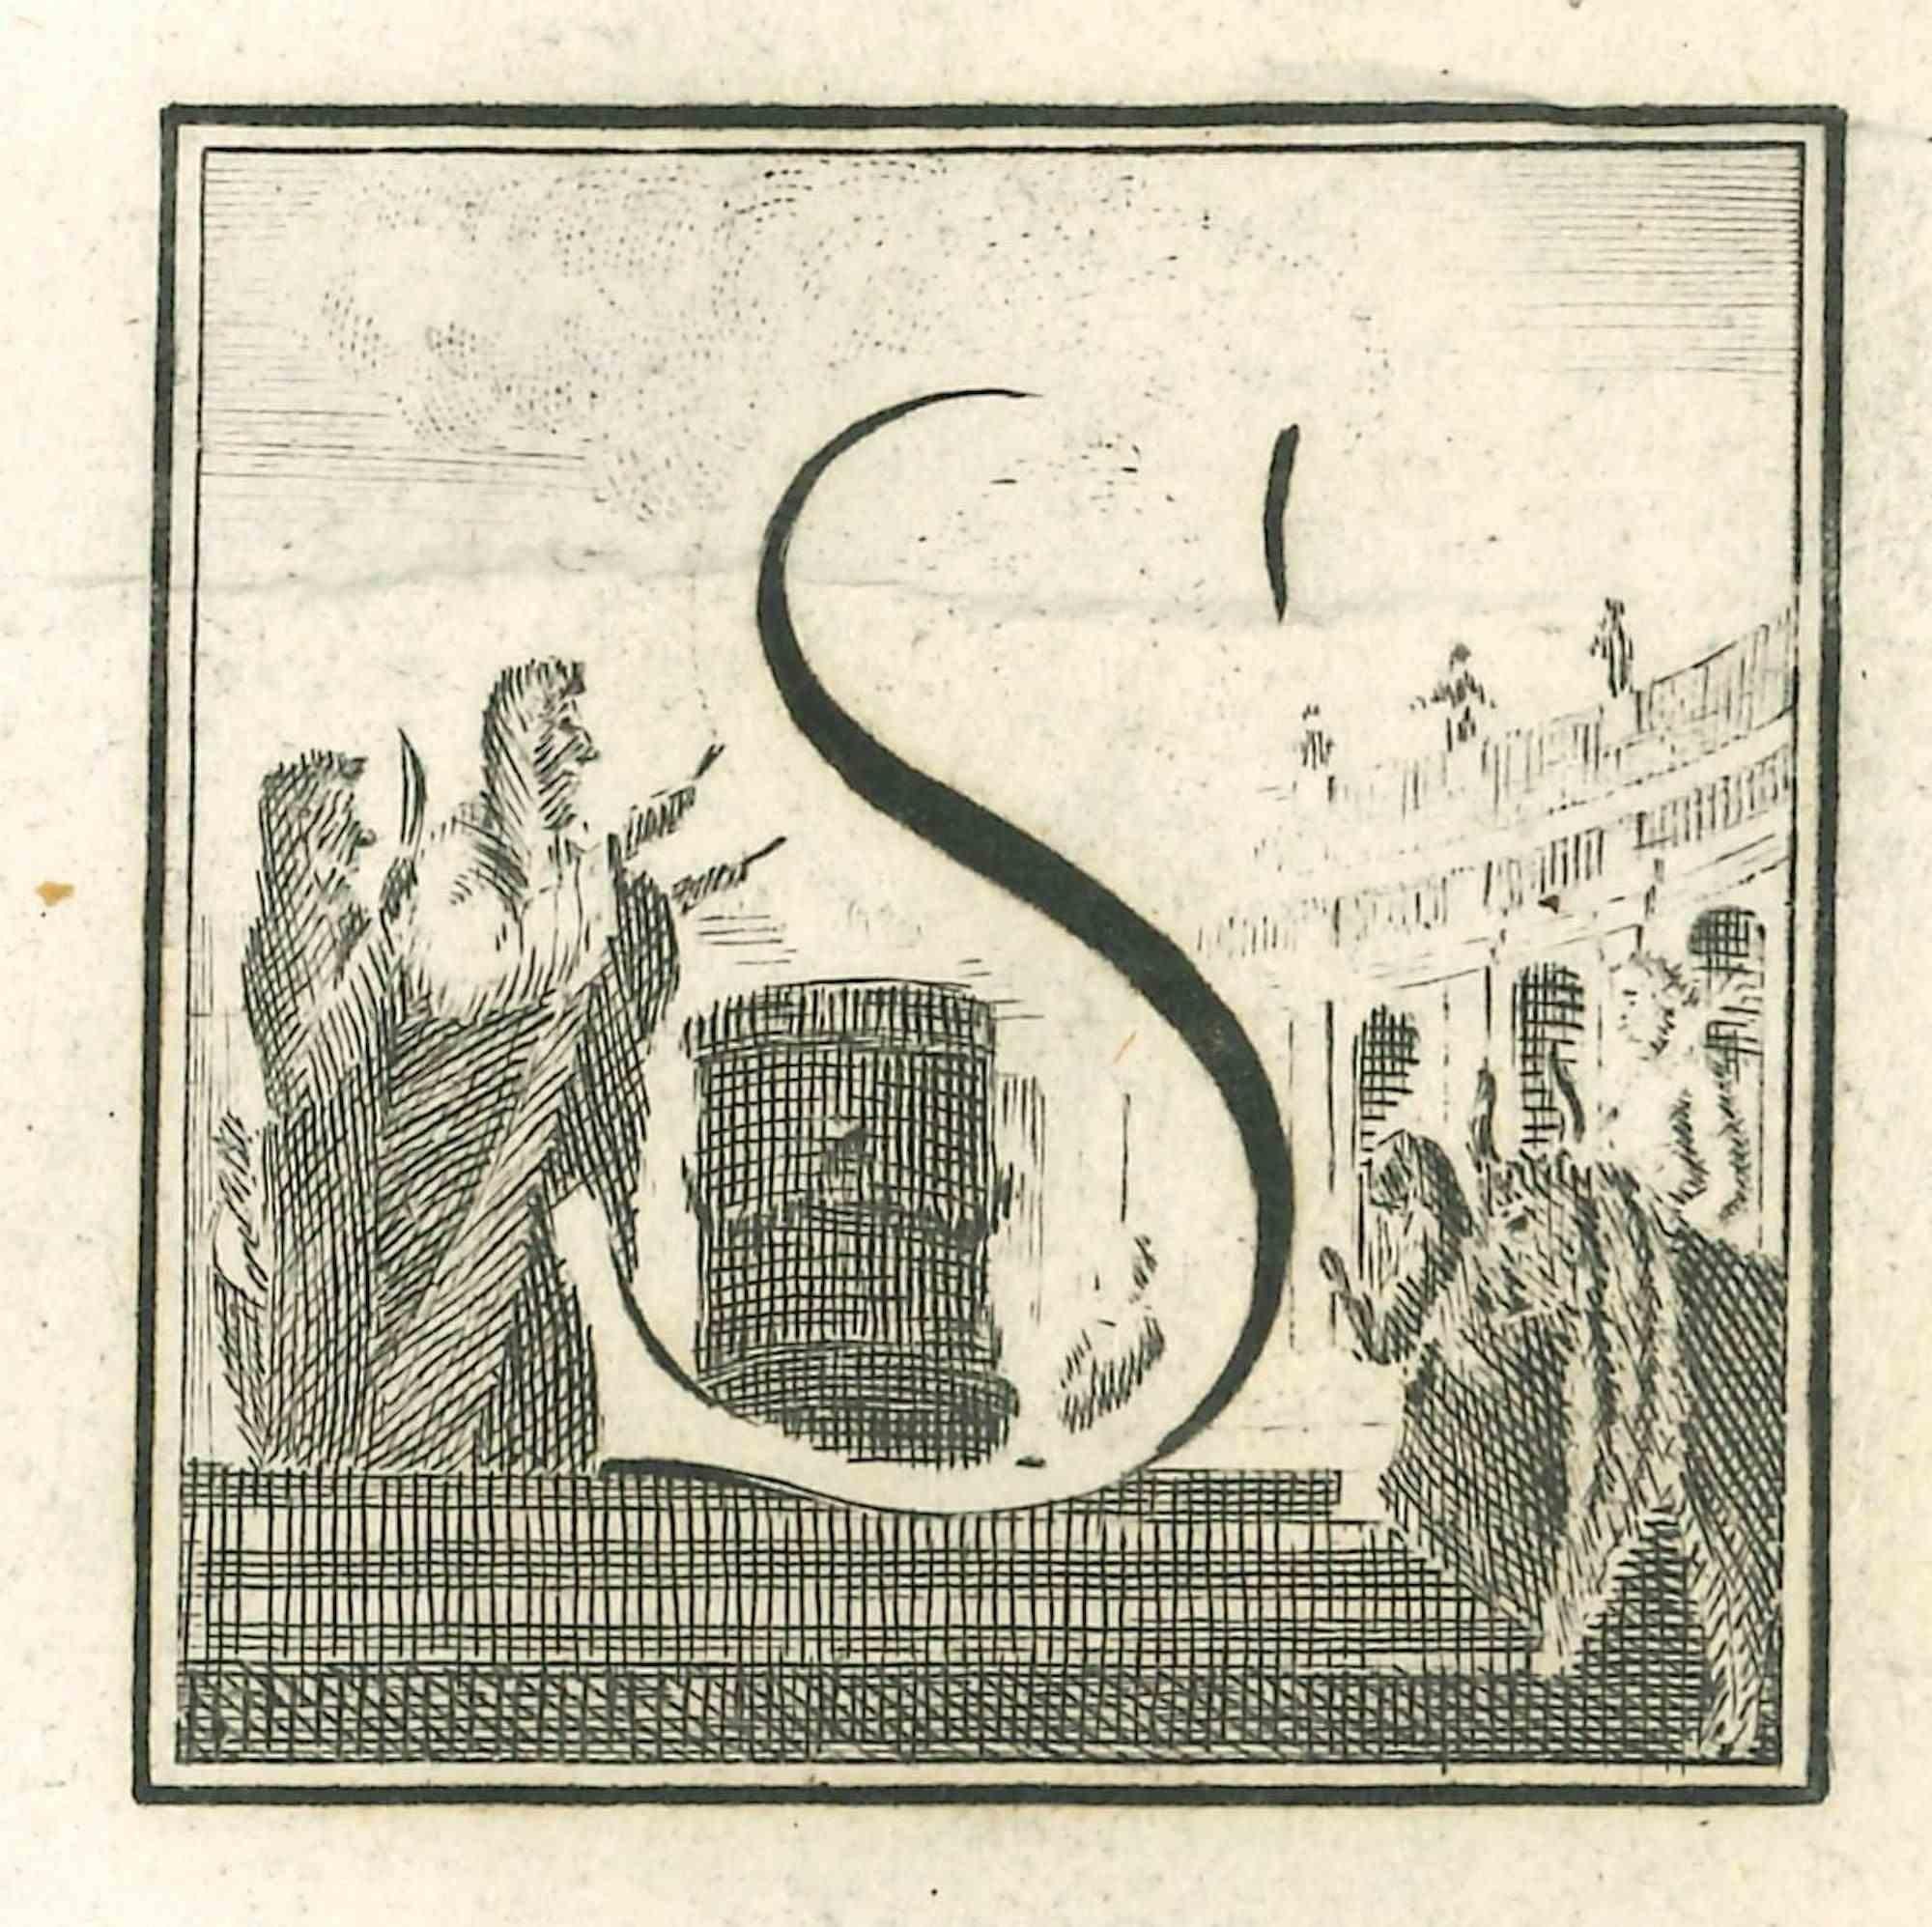 Lettre de l'alphabet S,  de la série "Antiquités d'Herculanum", est une gravure sur papier réalisée par Luigi Vanvitelli au 18ème siècle.

Bon état avec de légers plis.

La gravure appartient à la suite d'estampes "Antiquités d'Herculanum exposées"